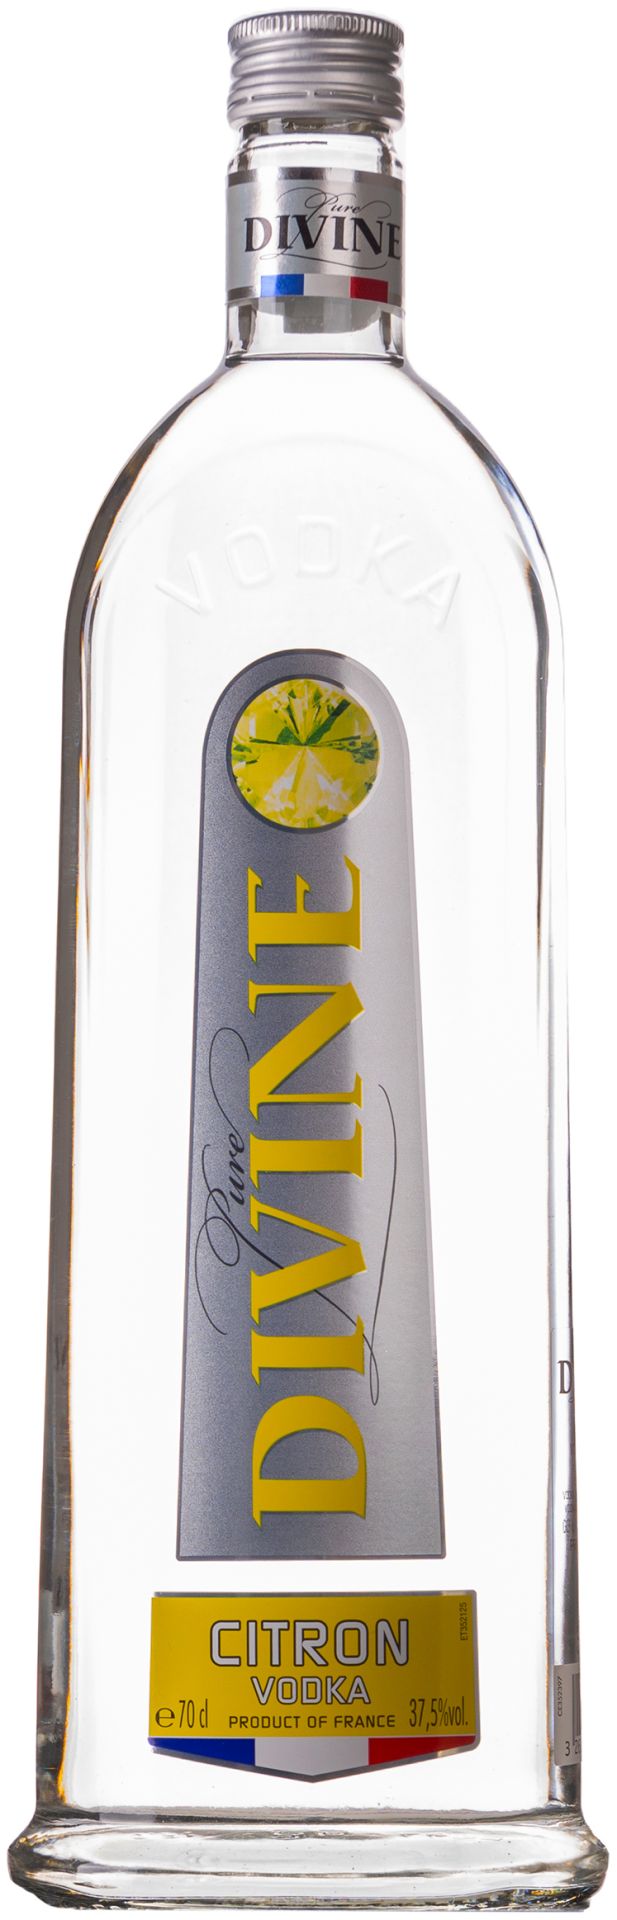 Vodka DIVINE Citron-1L